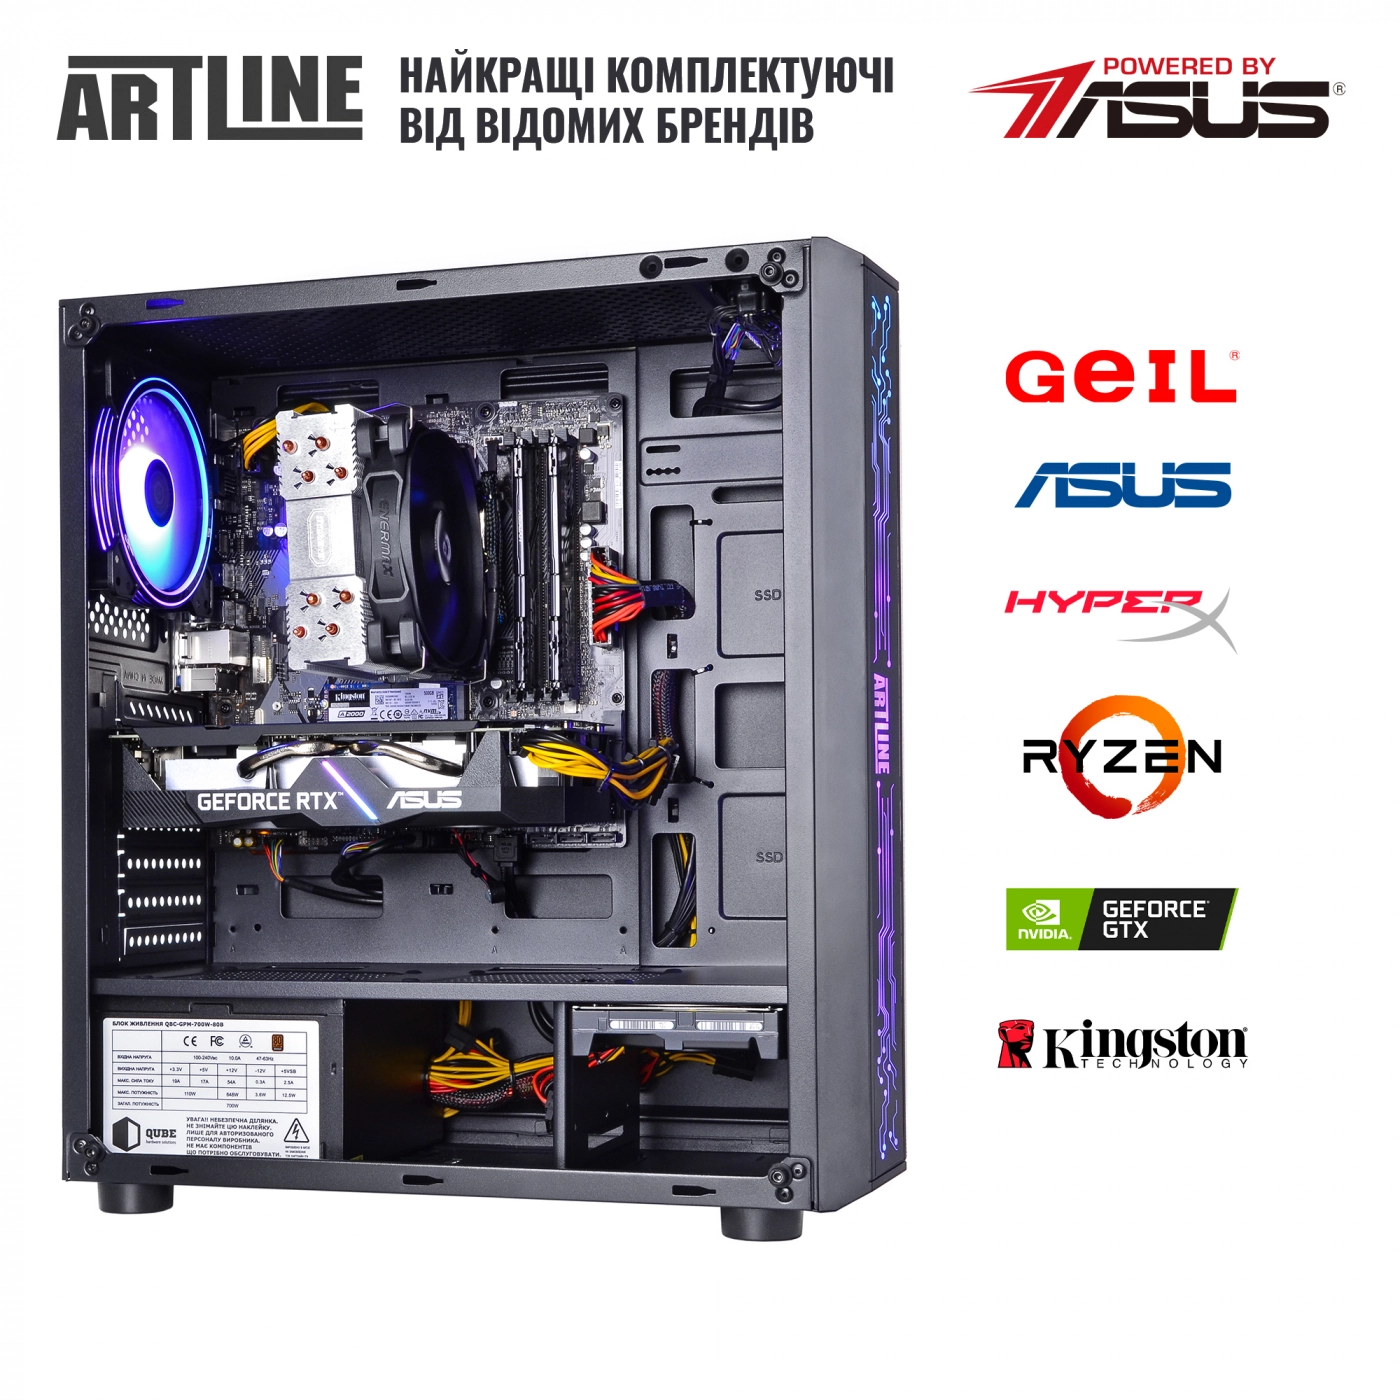 Купить Компьютер ARTLINE Gaming X85v16 - фото 8